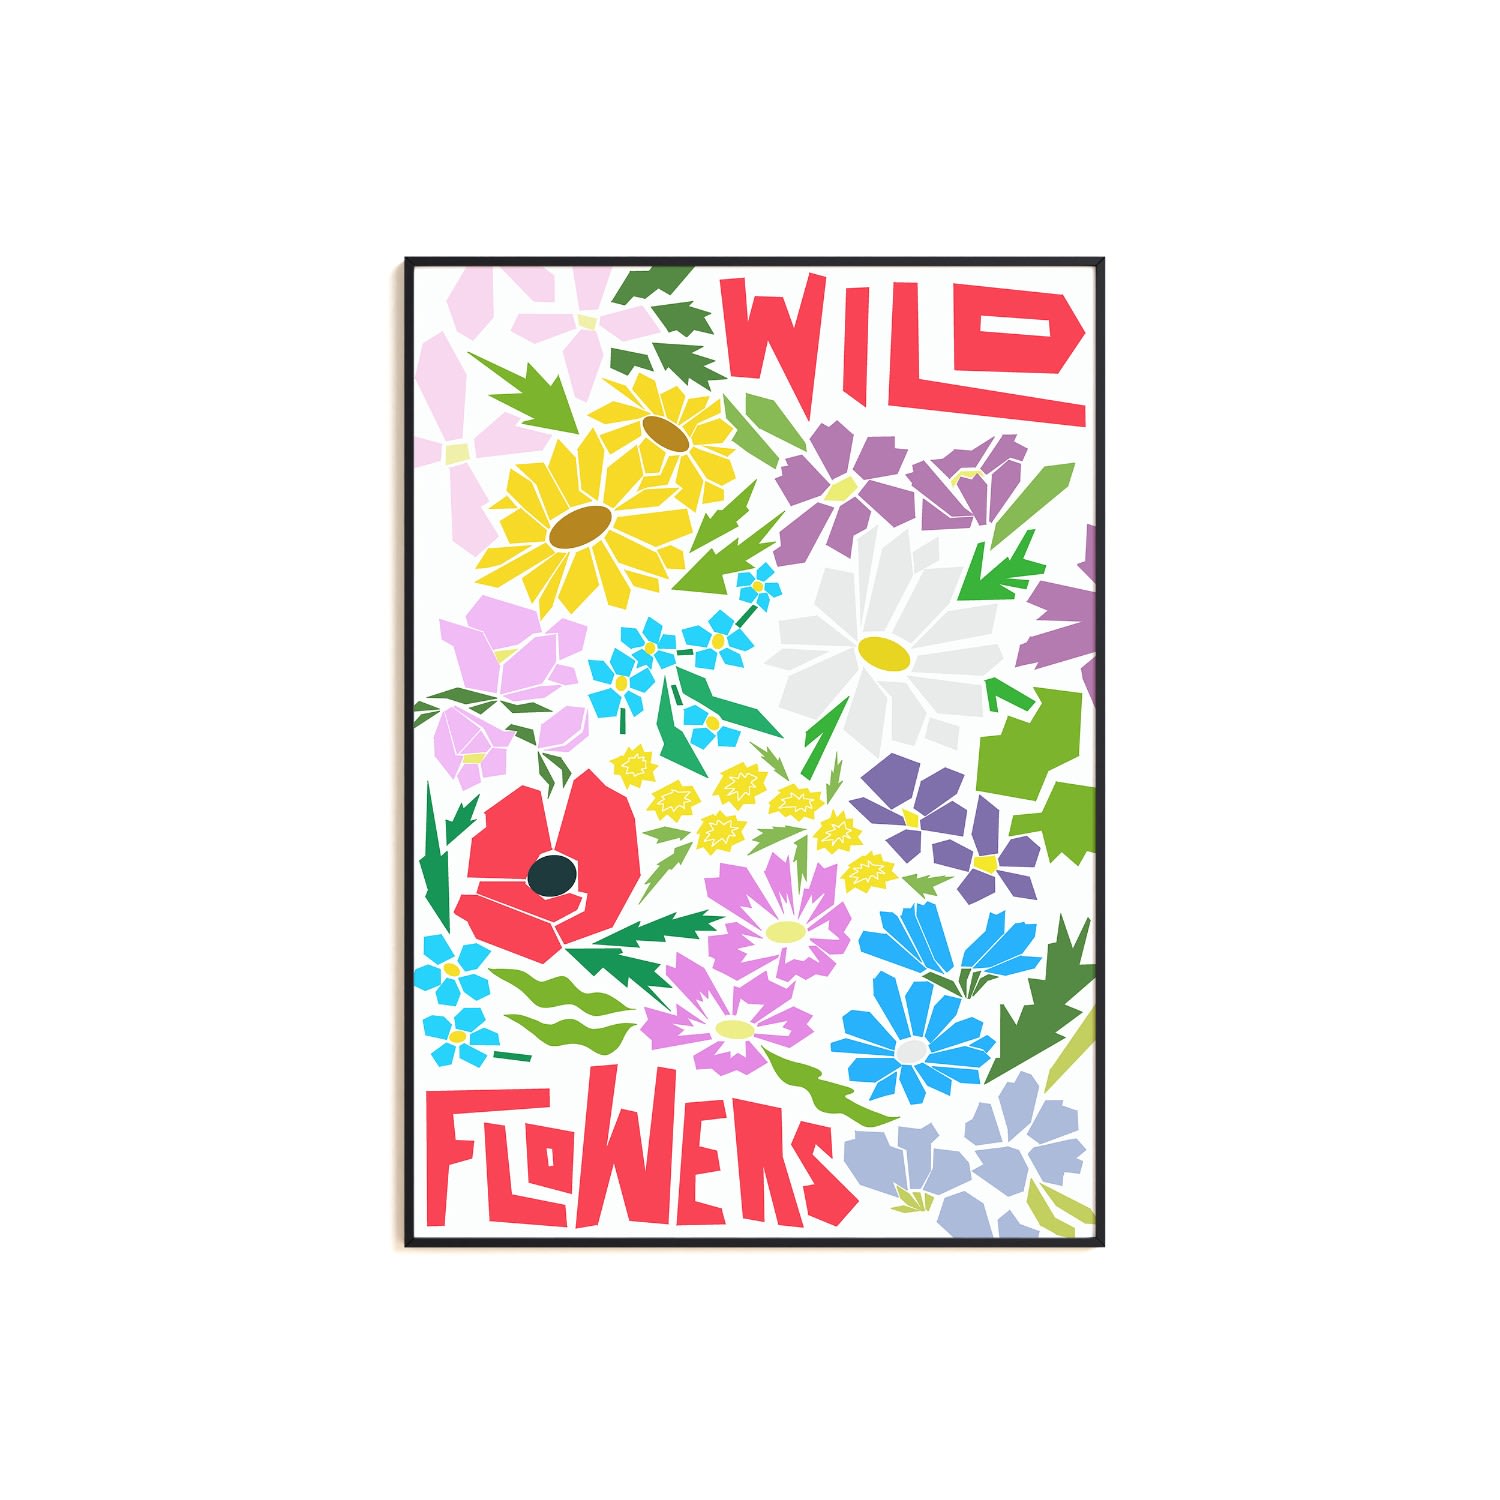 Wildflowers Art Print - A3 Natalie Cass Art